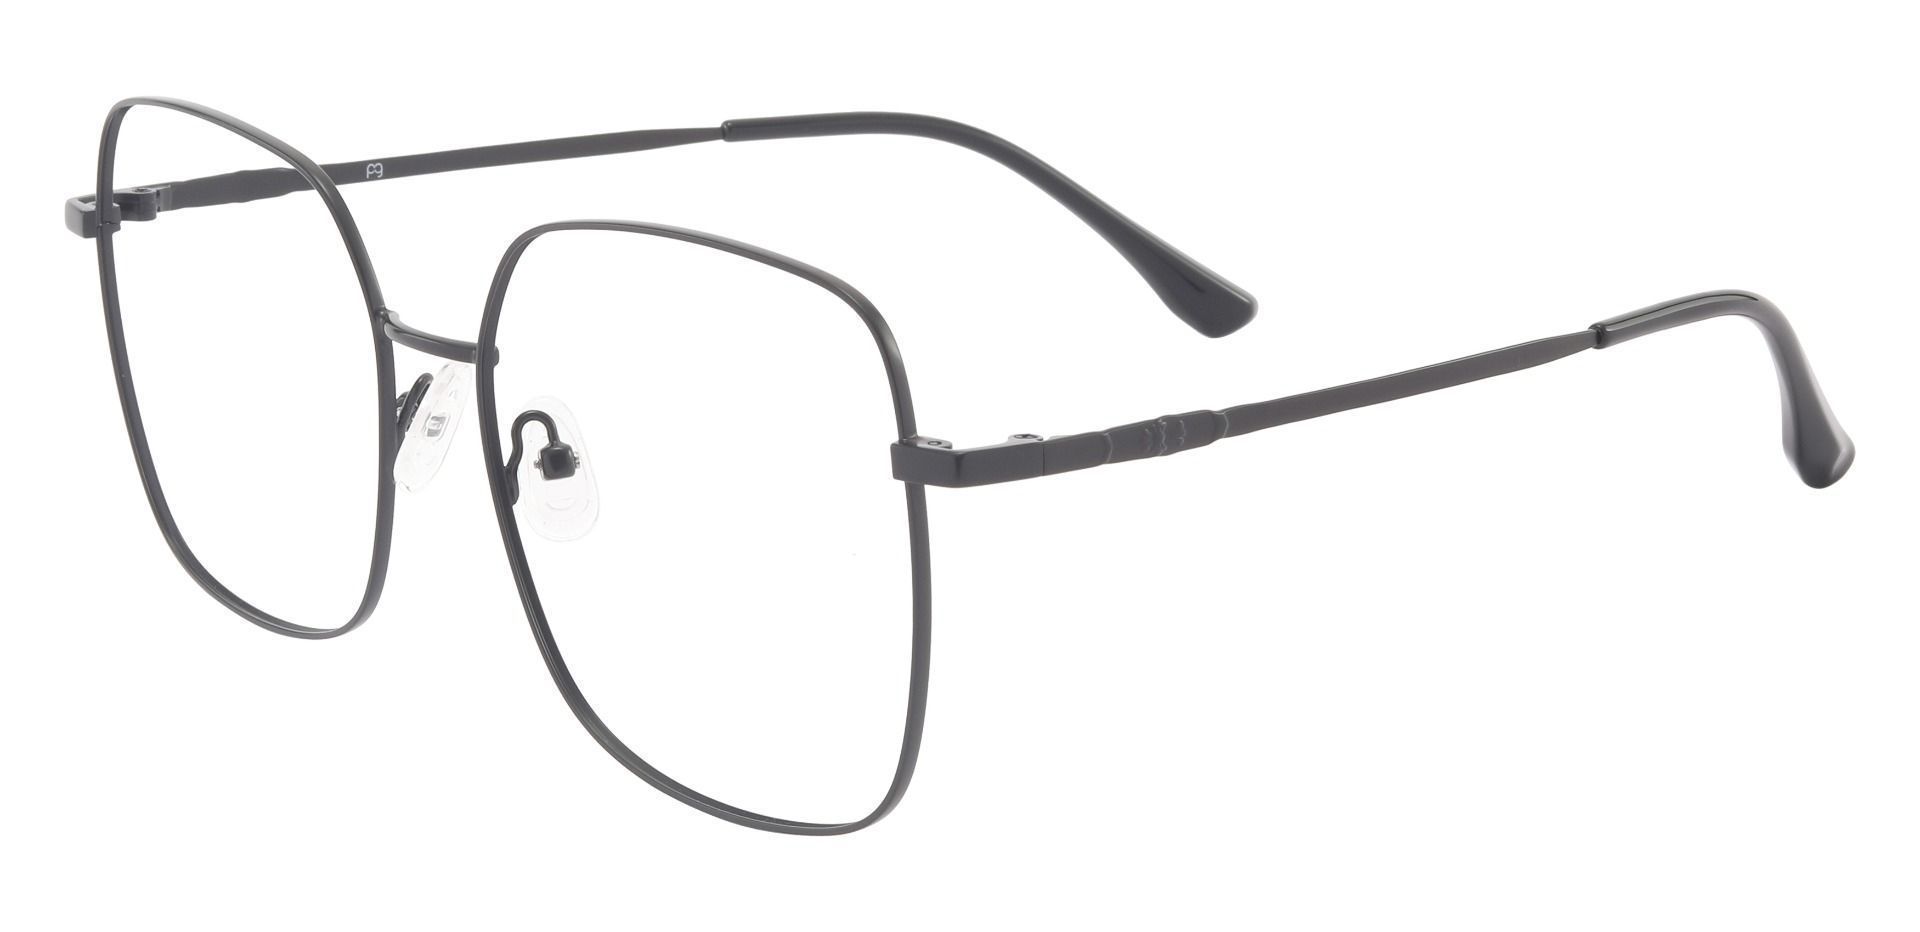 Sanborn Square Prescription Glasses - Black